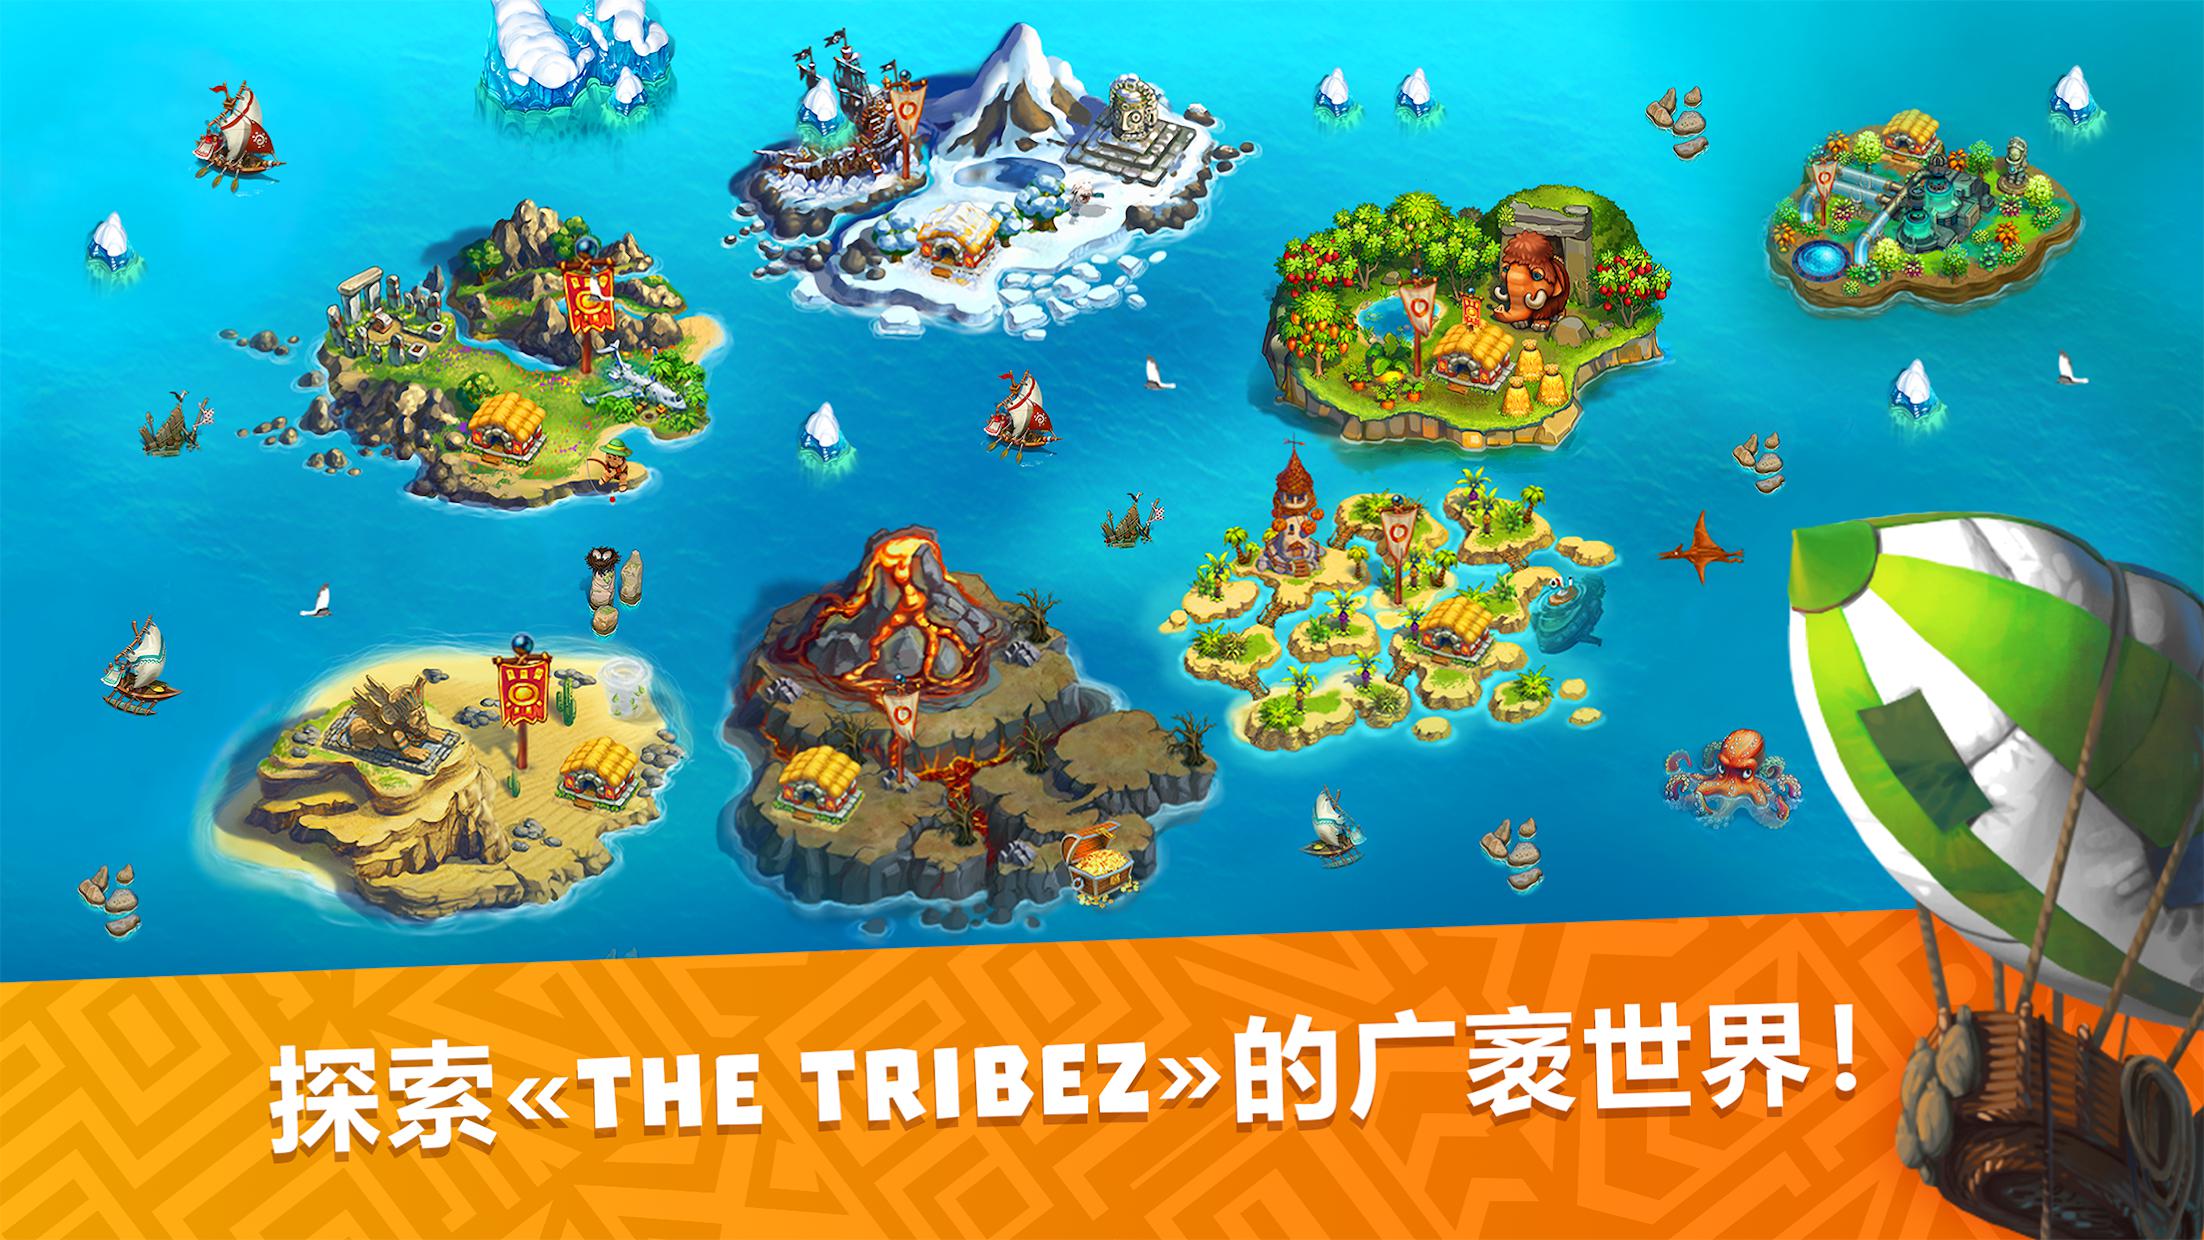 the tribez build a village cheats